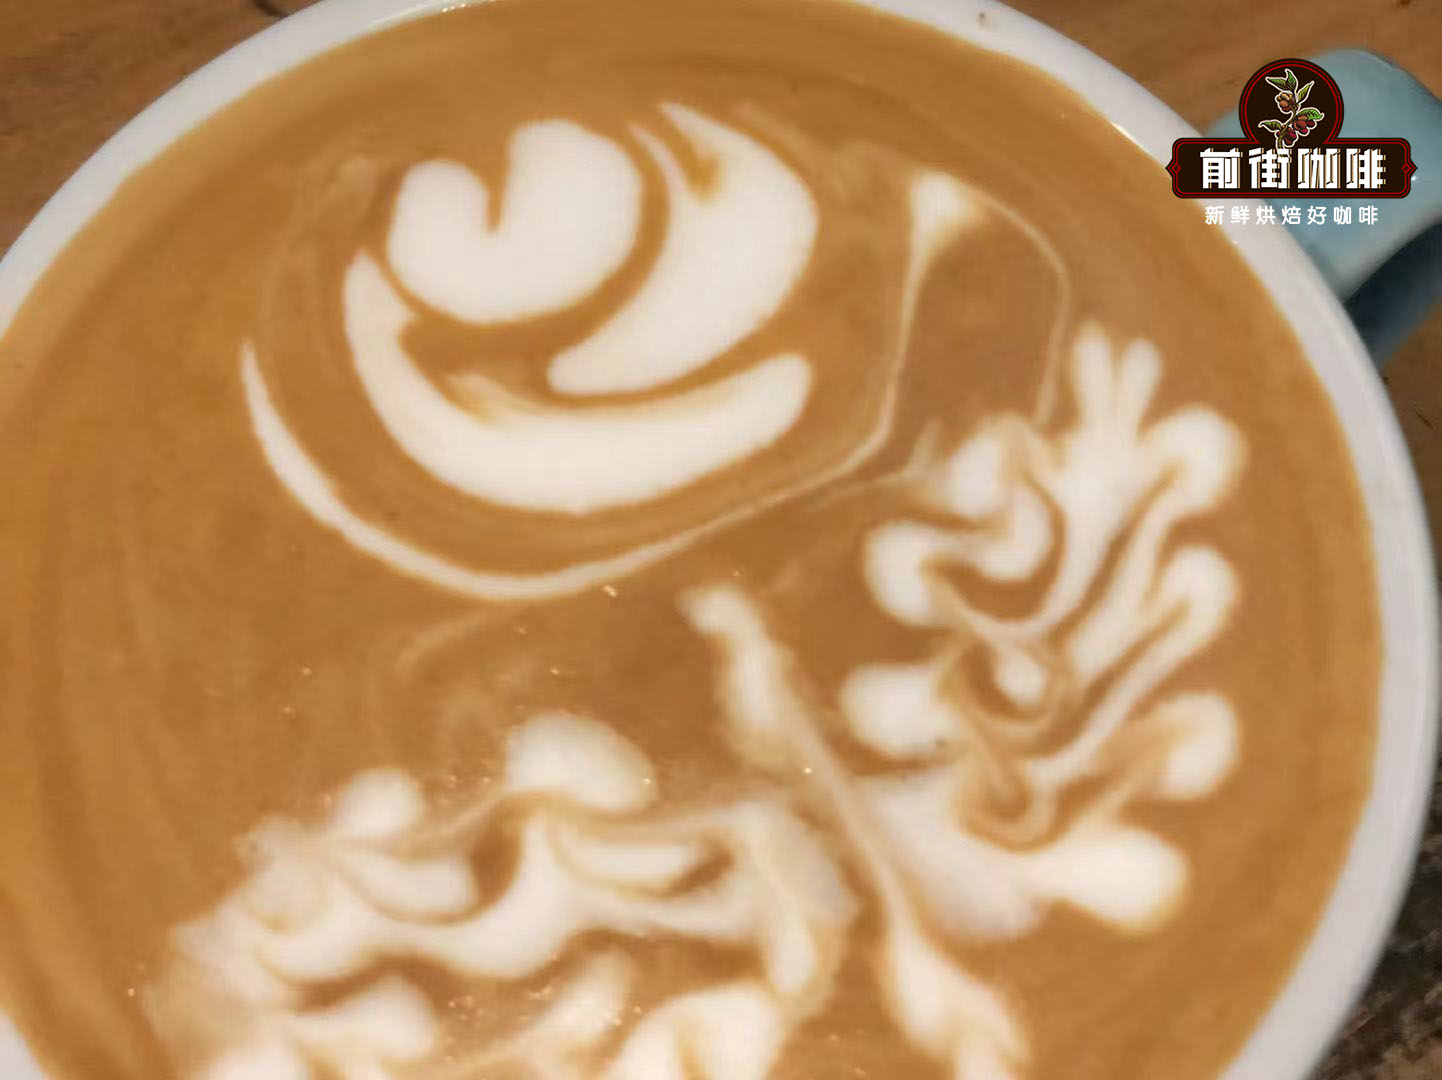 Latte milk foam teaching skills of latte coffee milk foam smooth and long-lasting